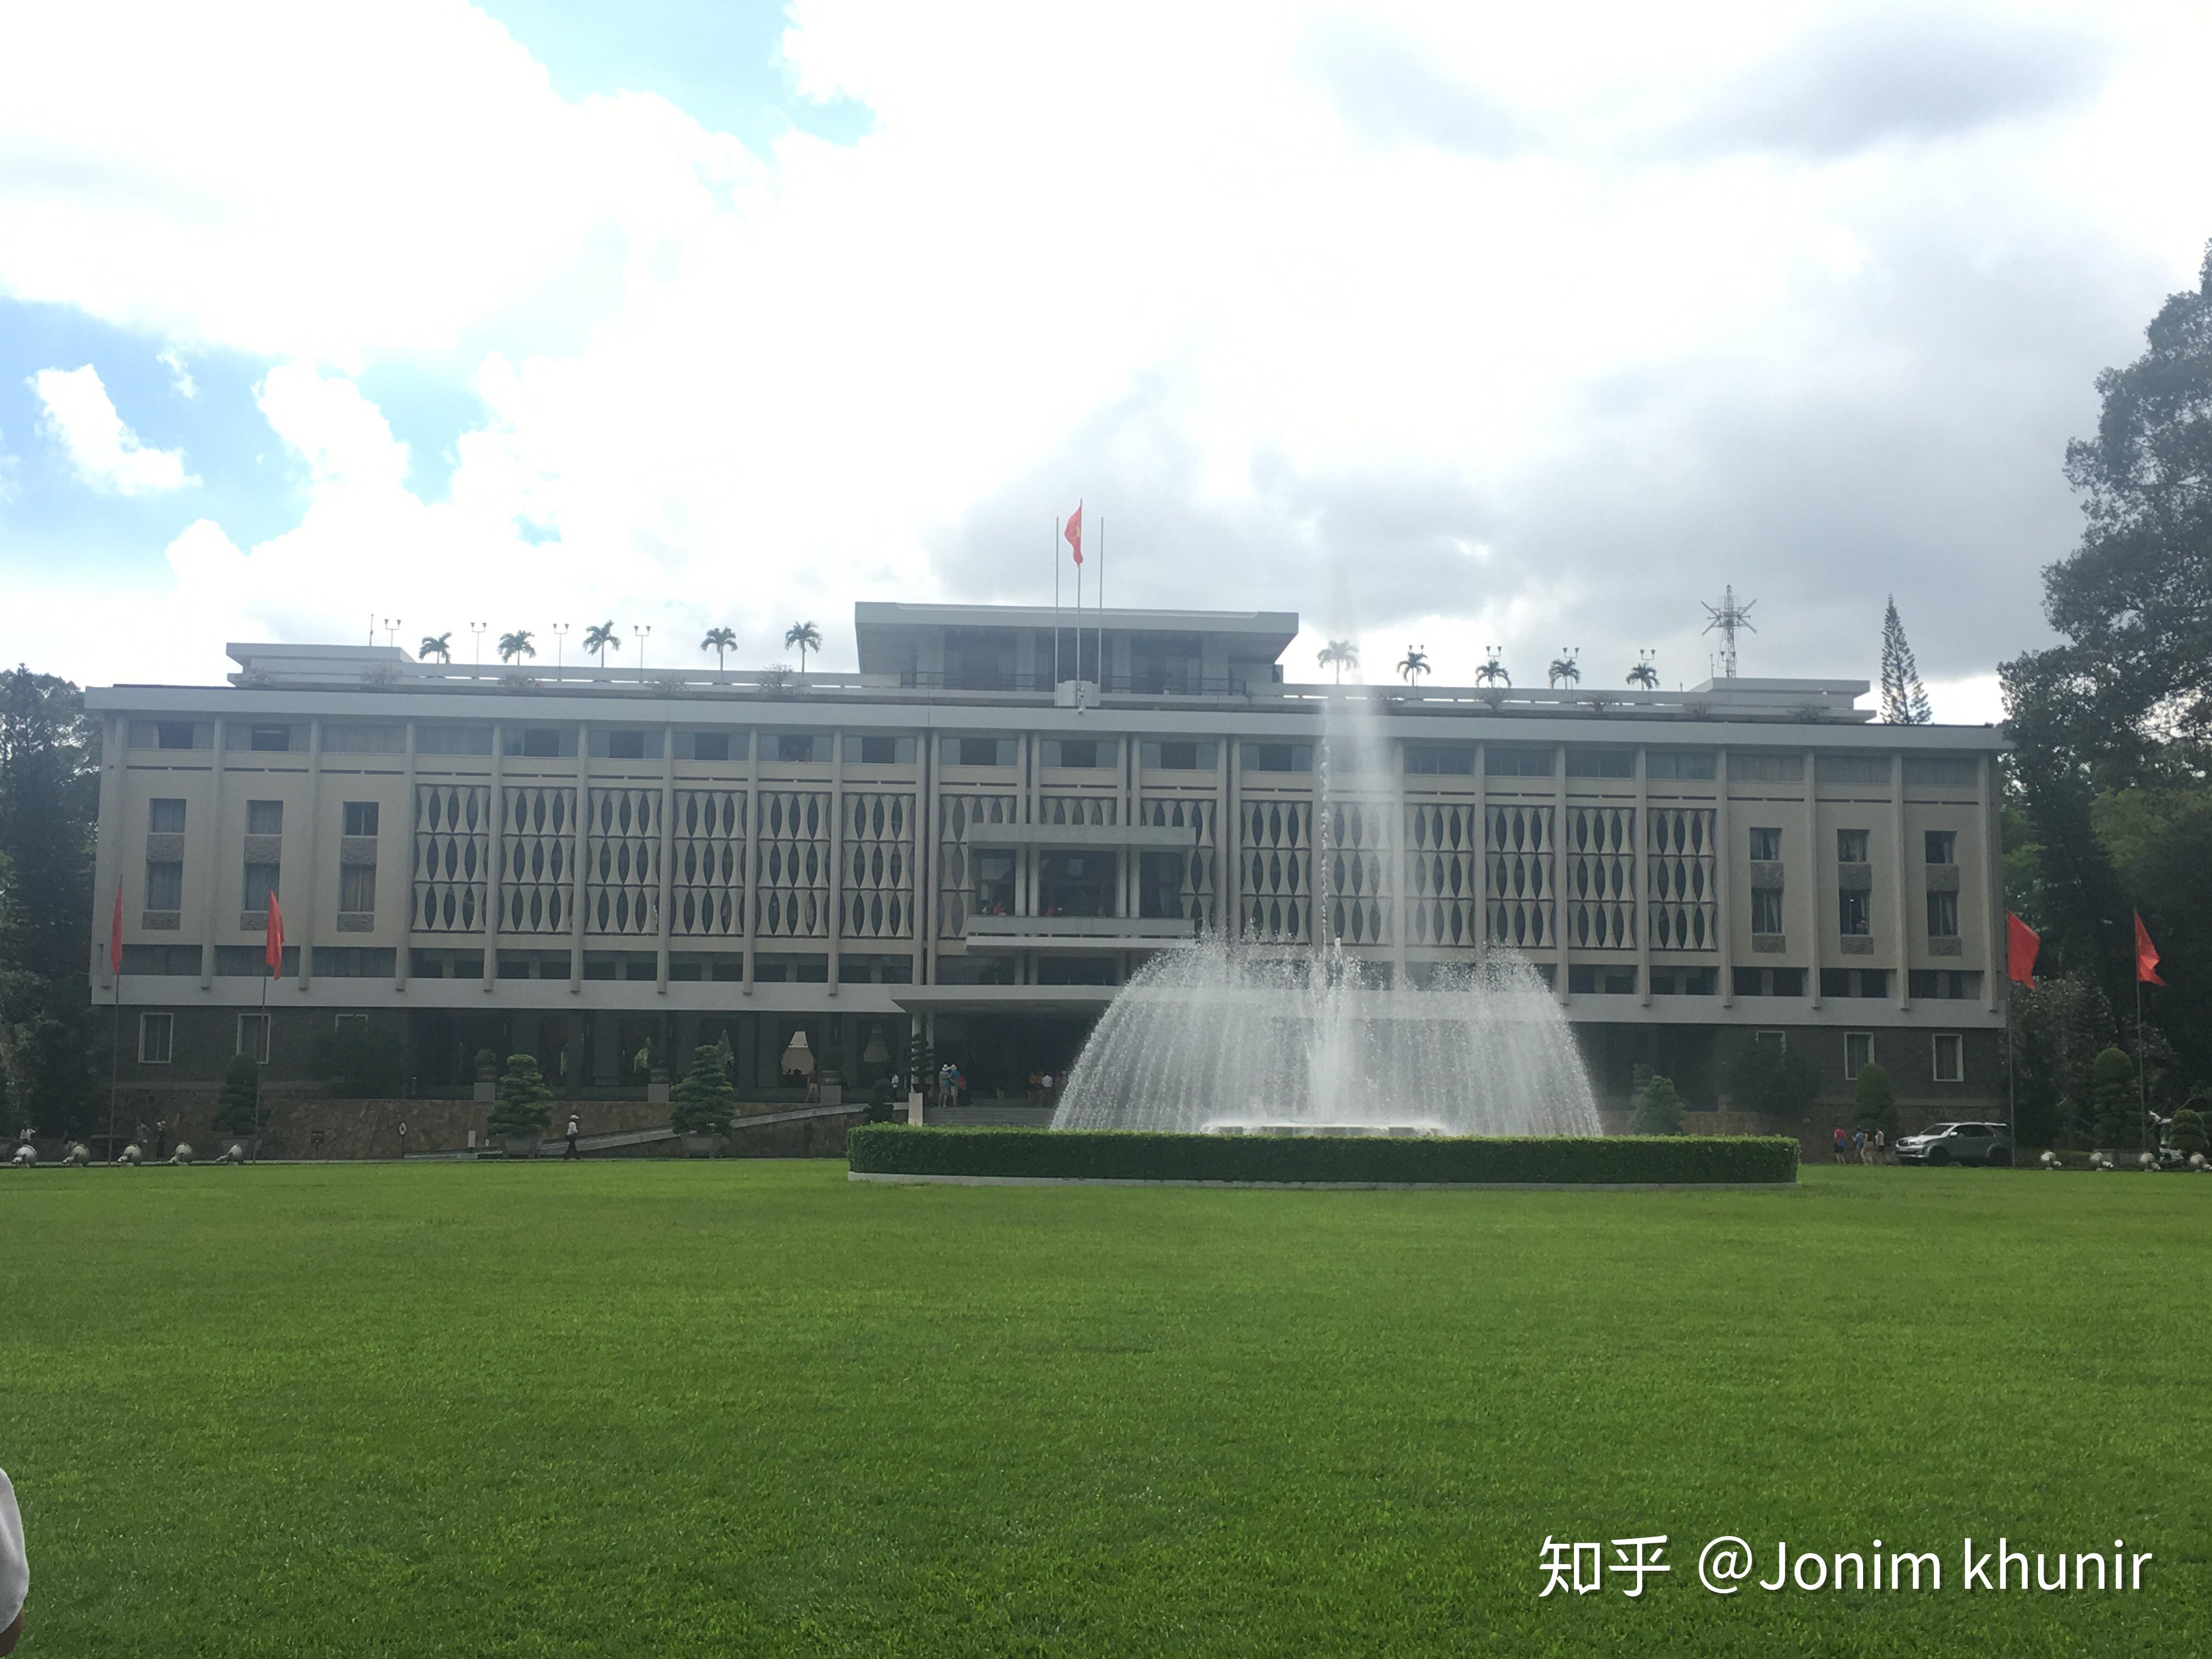 胡志明南越总统府统一宫一览